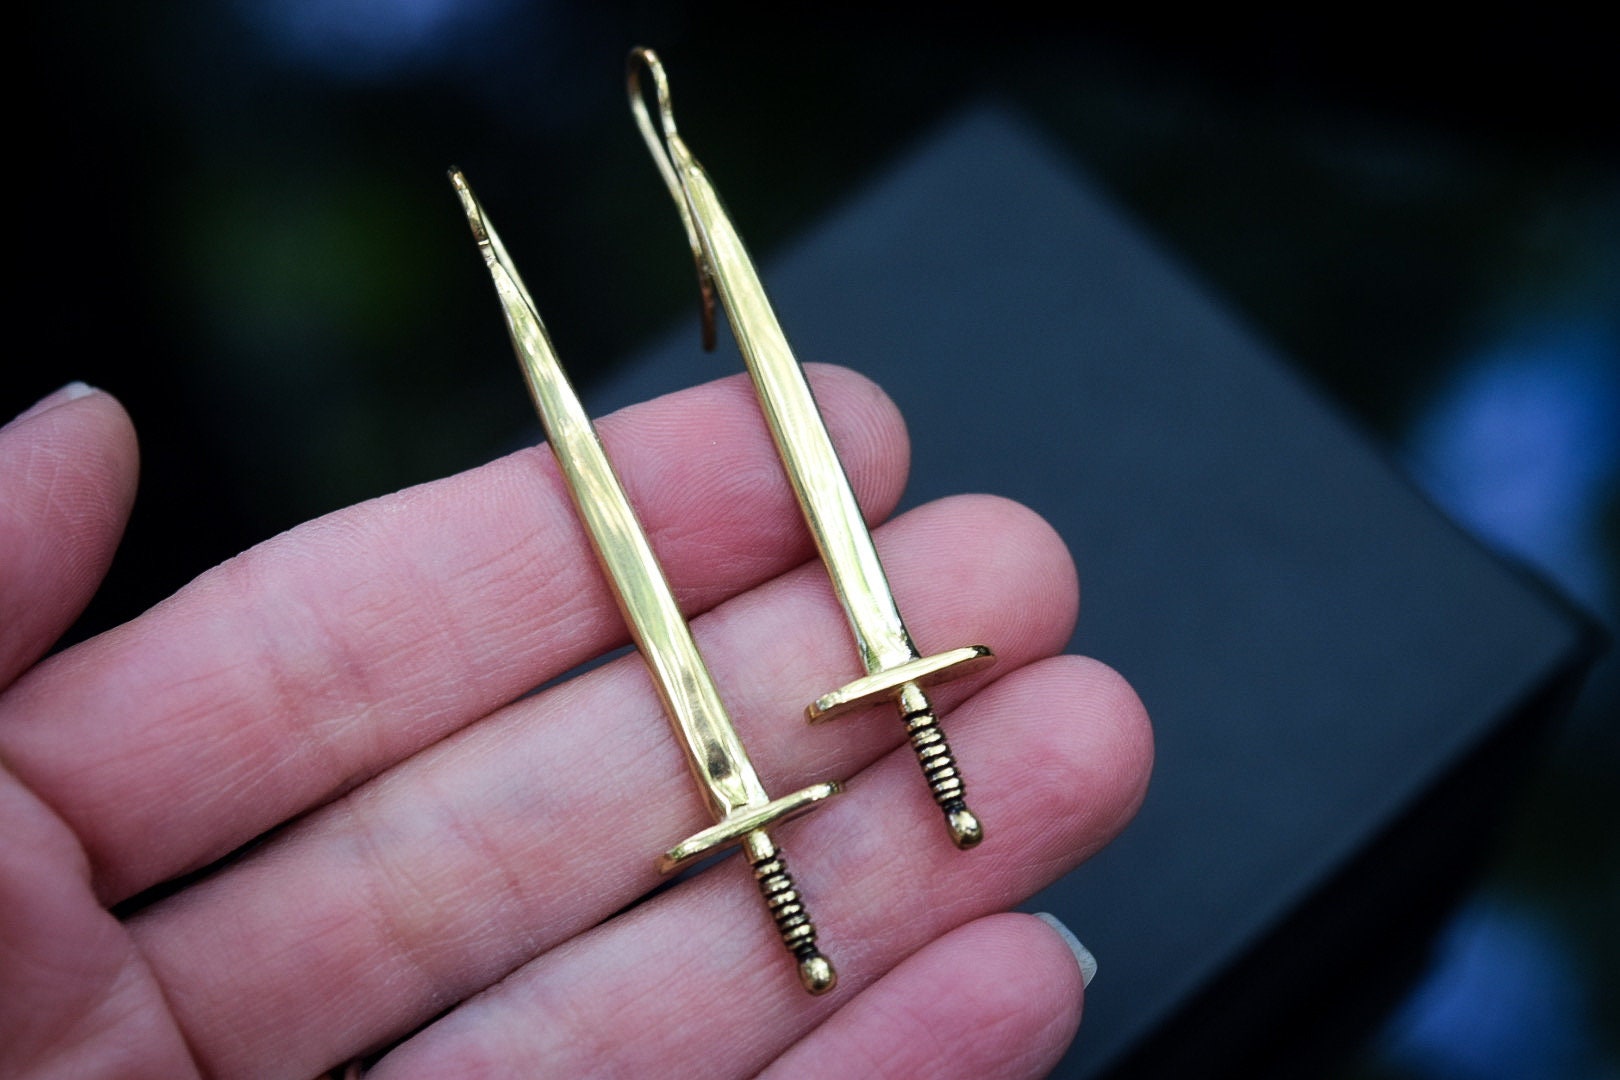 Gold Sword Earrings/ 14k Vermeil Sword Earrings/ Sword Dangles/ Sword Posts